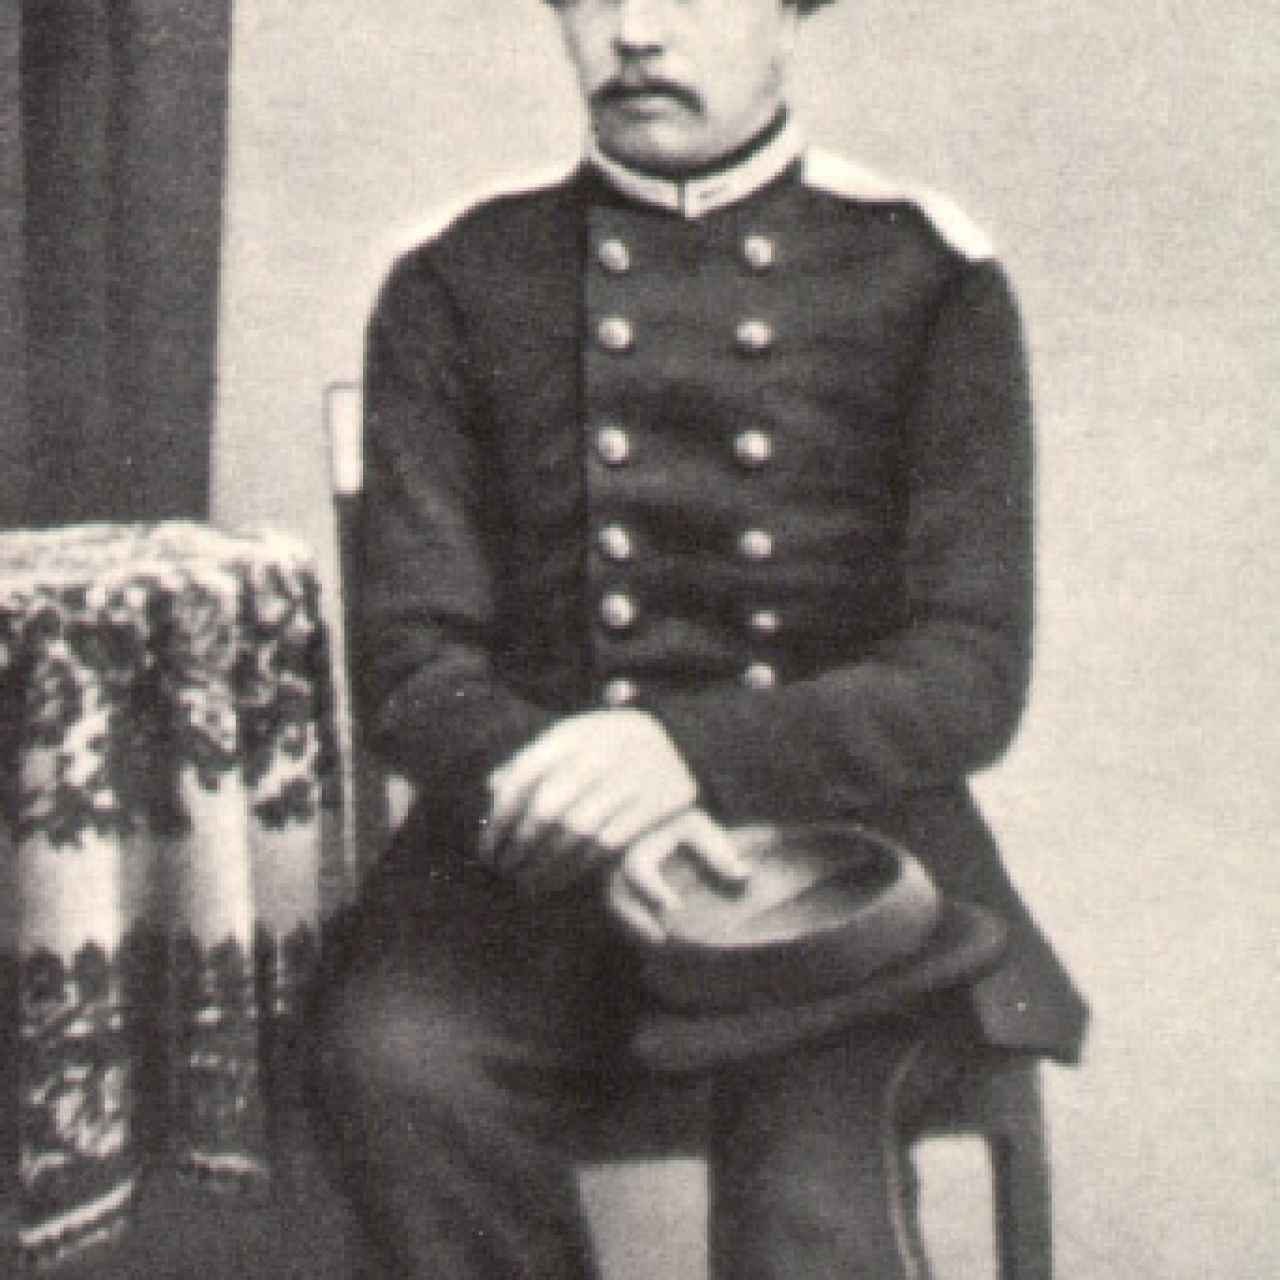 Fiódor Dostoyevski vestido con el uniforme de ingeniero militar.